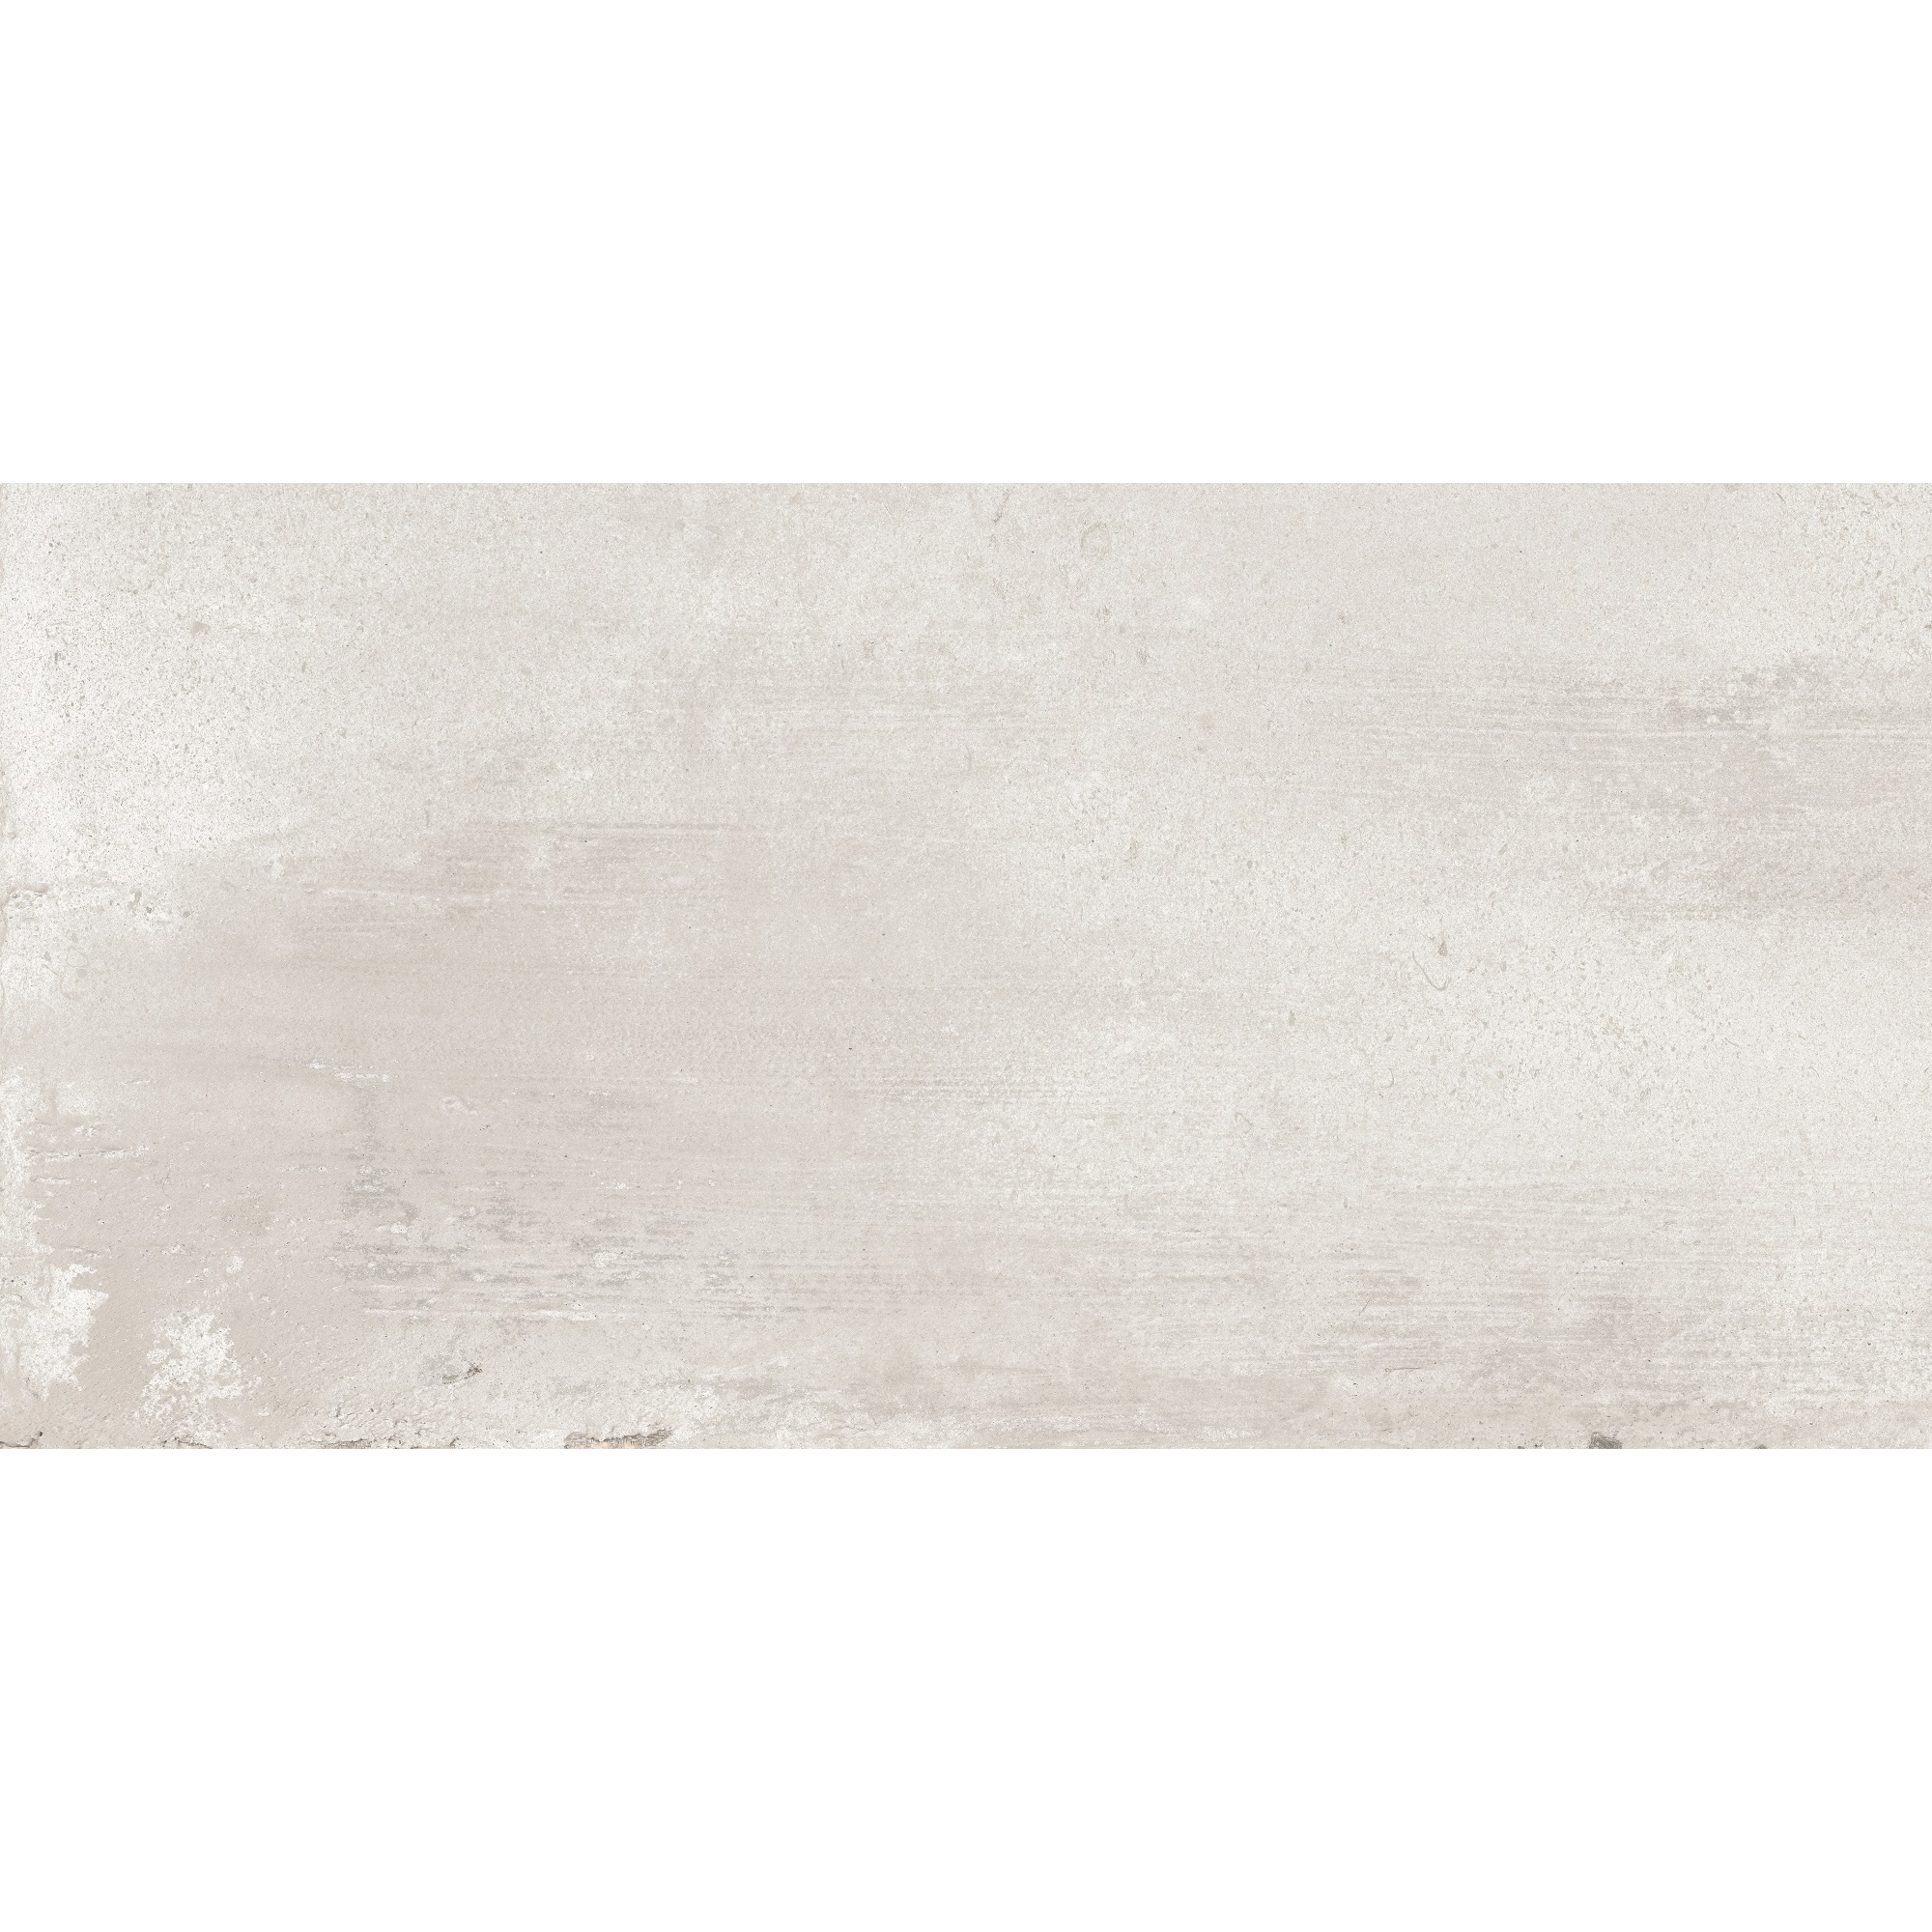 Bodenfliese 'Beton' Feinsteinzeug graubeige 31 x 62 cm + product picture